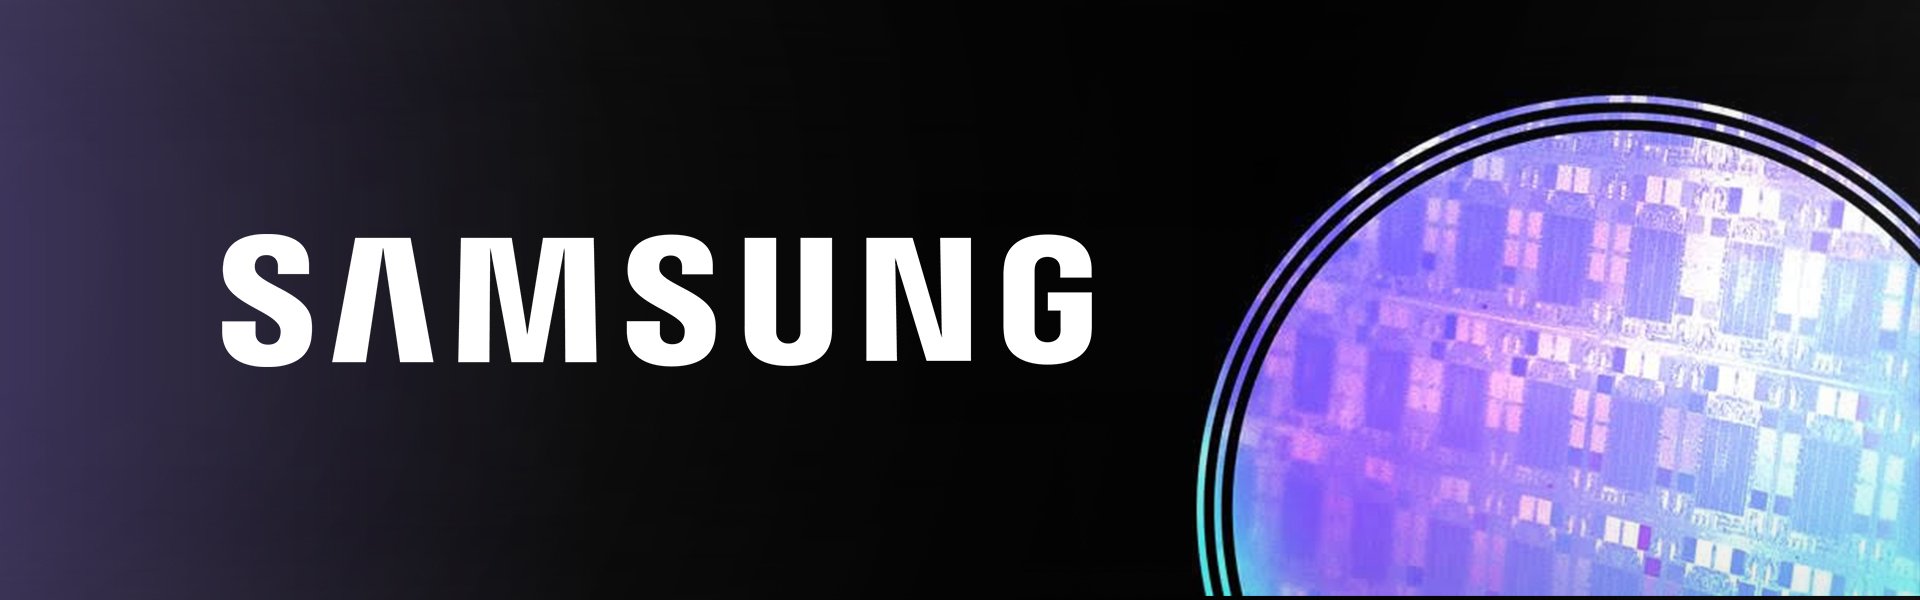 Samsung Galaxy A21s, 32 GB, Dual SIM, Black Samsung 